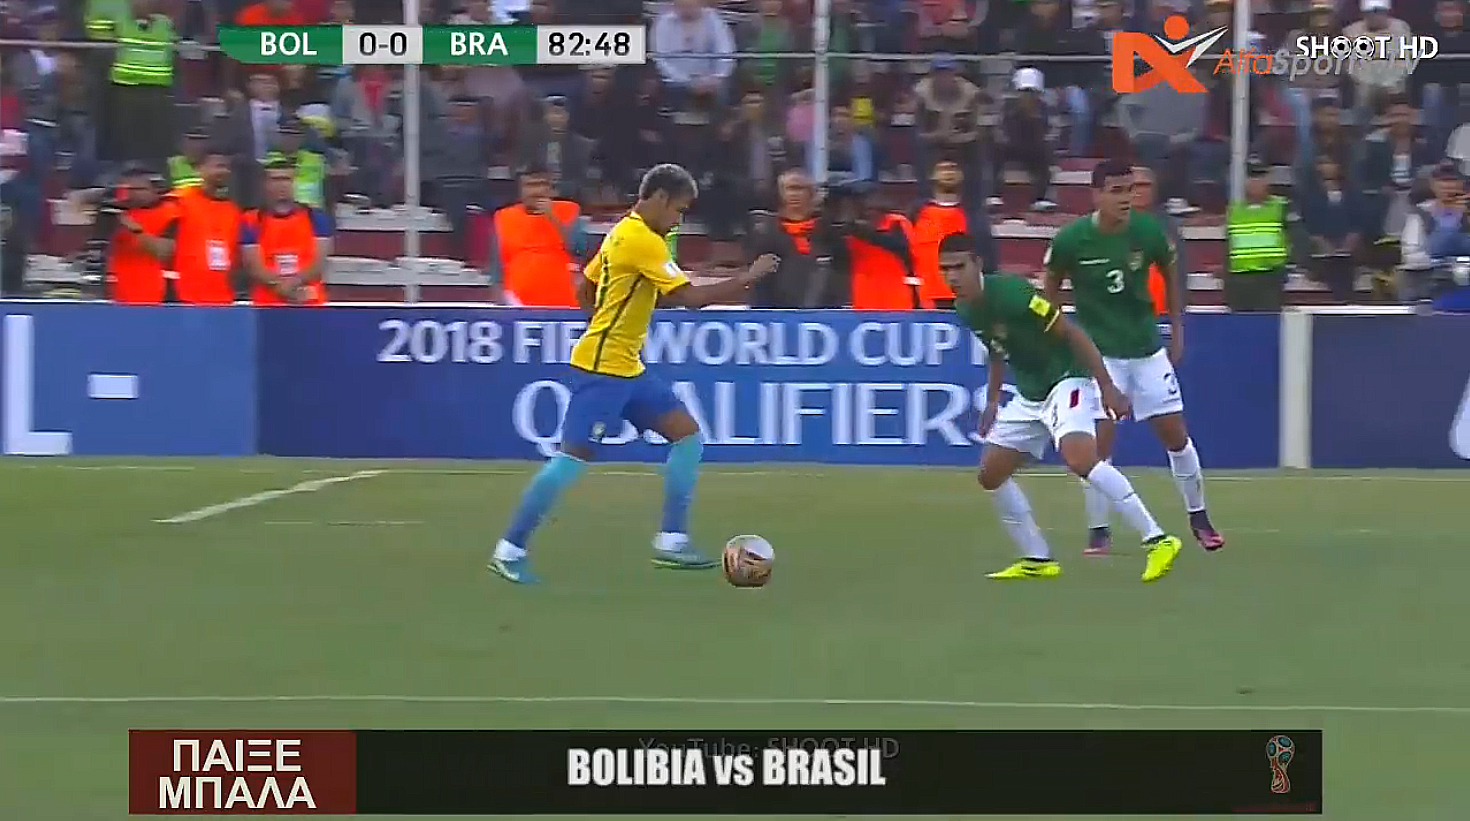 Bolibia vs Brasil @ AlfaSports TV